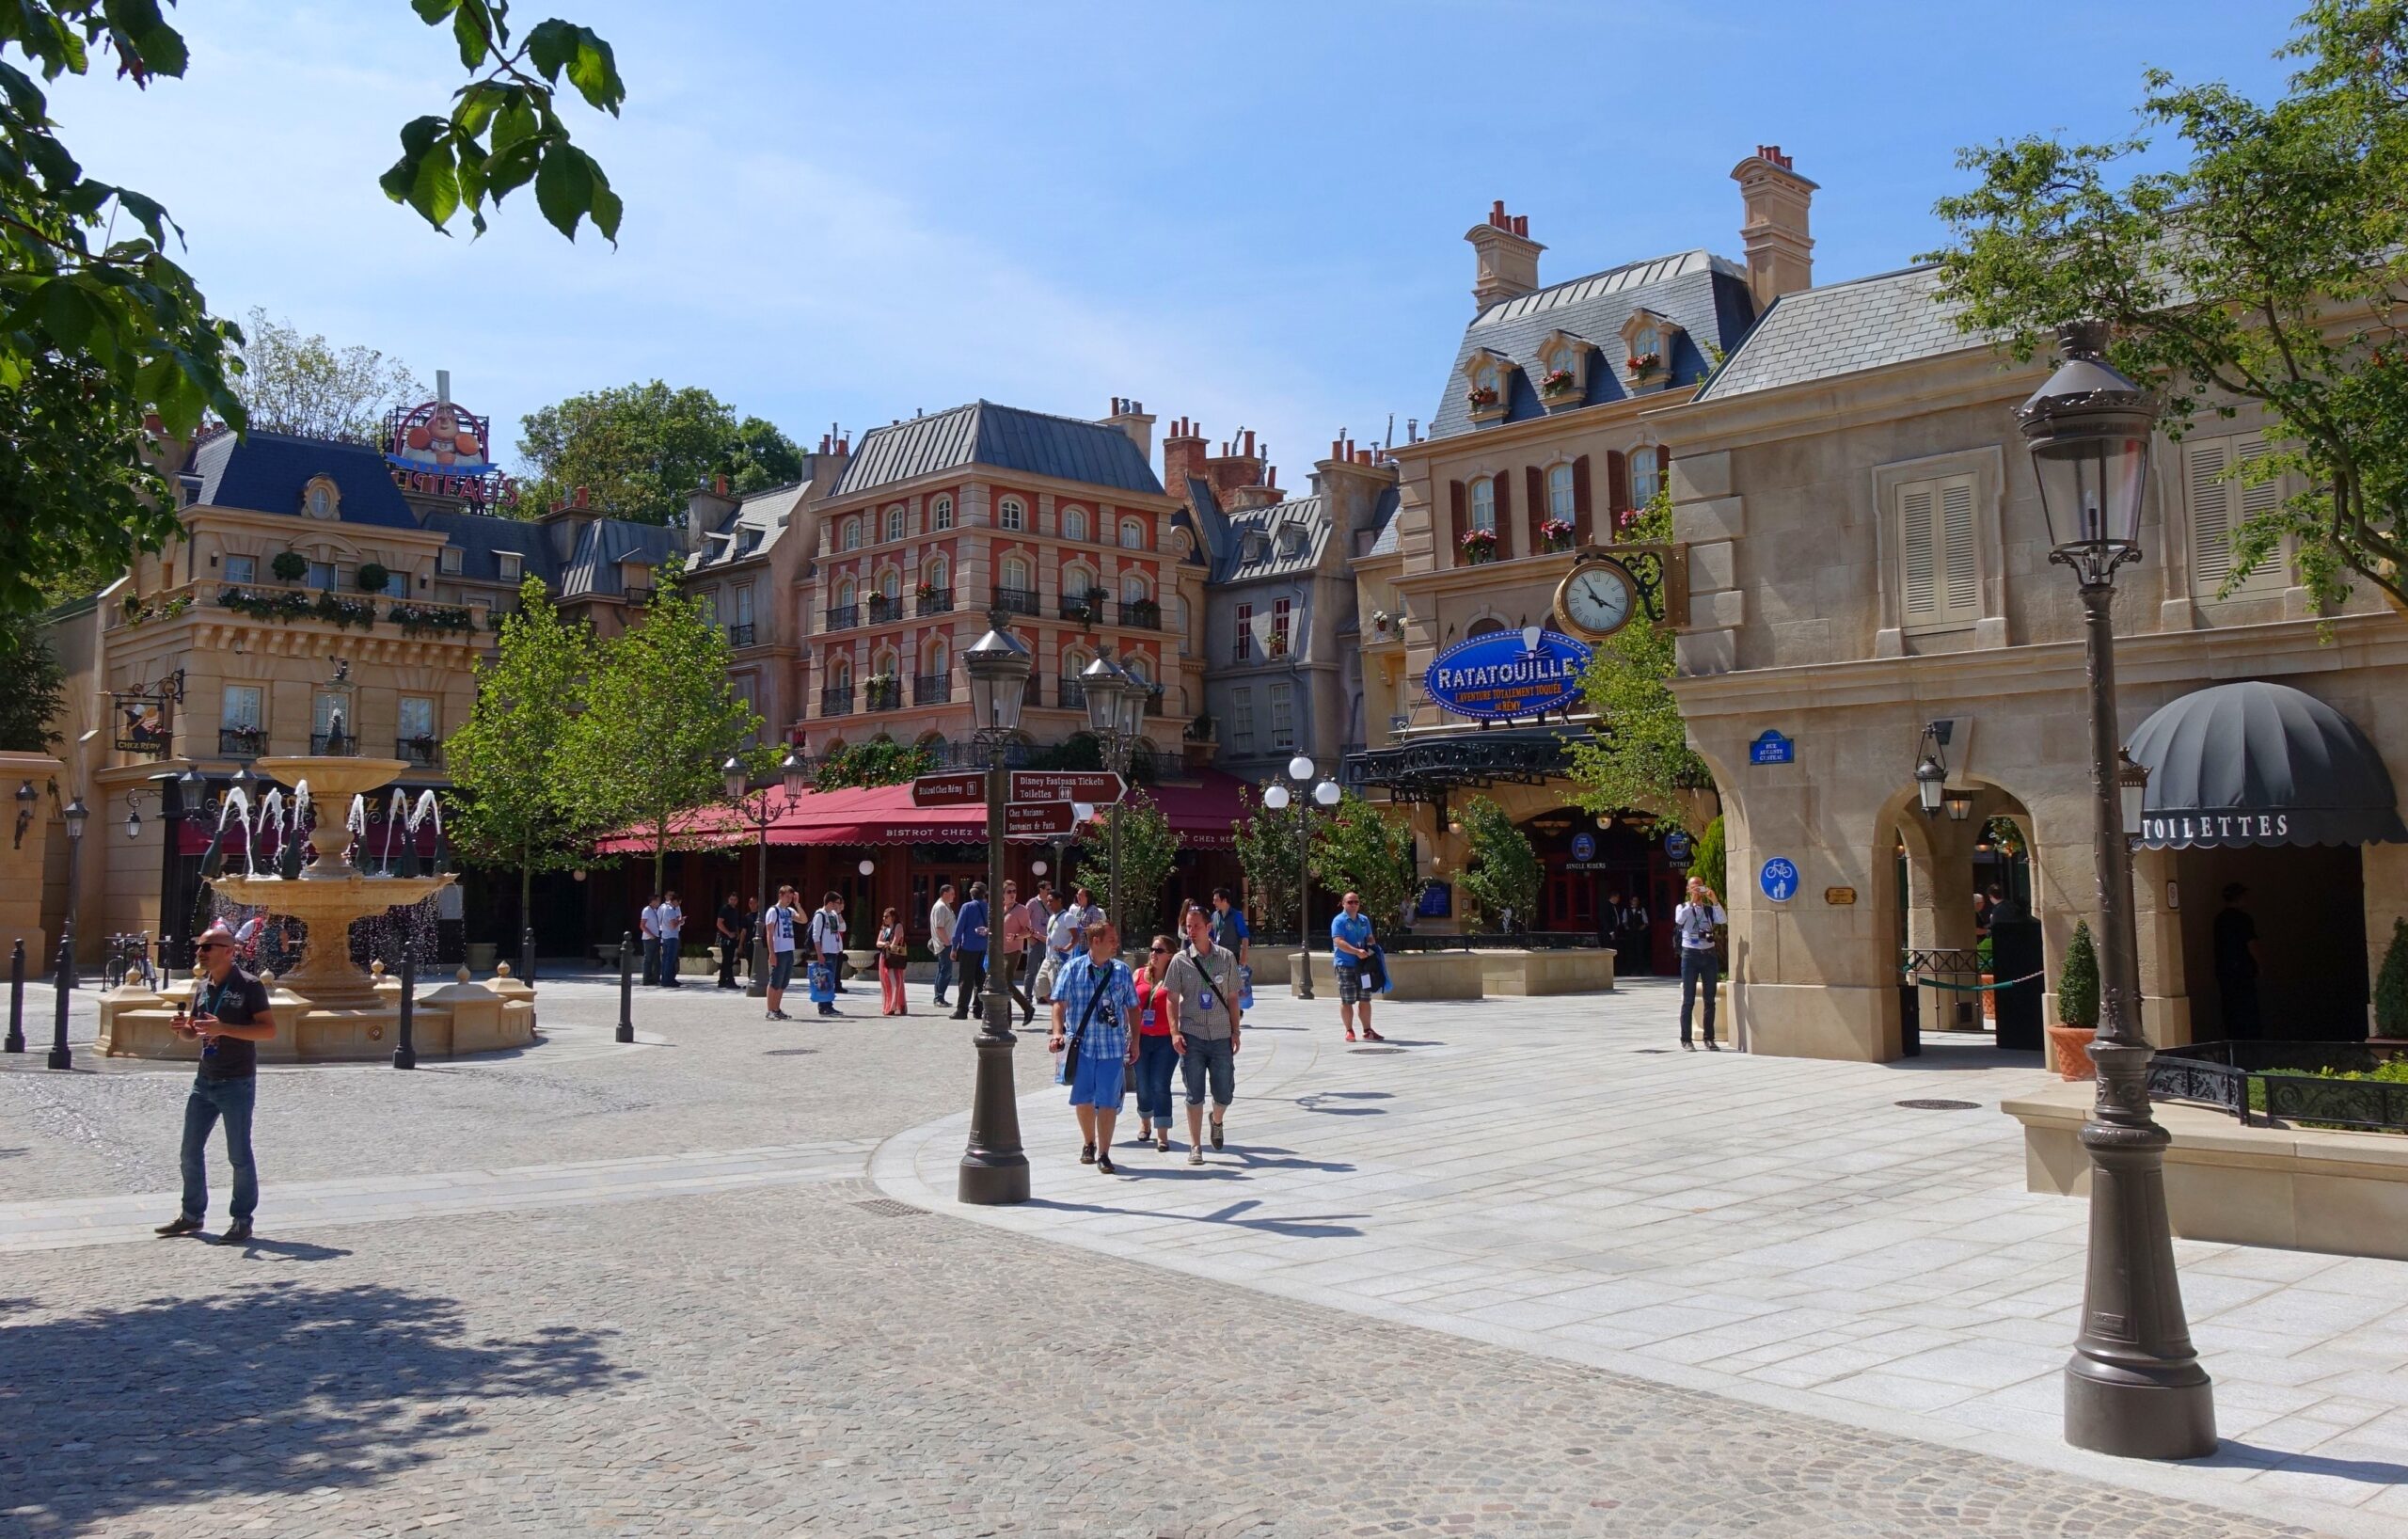 Ratten in Disneyland Parijs!?